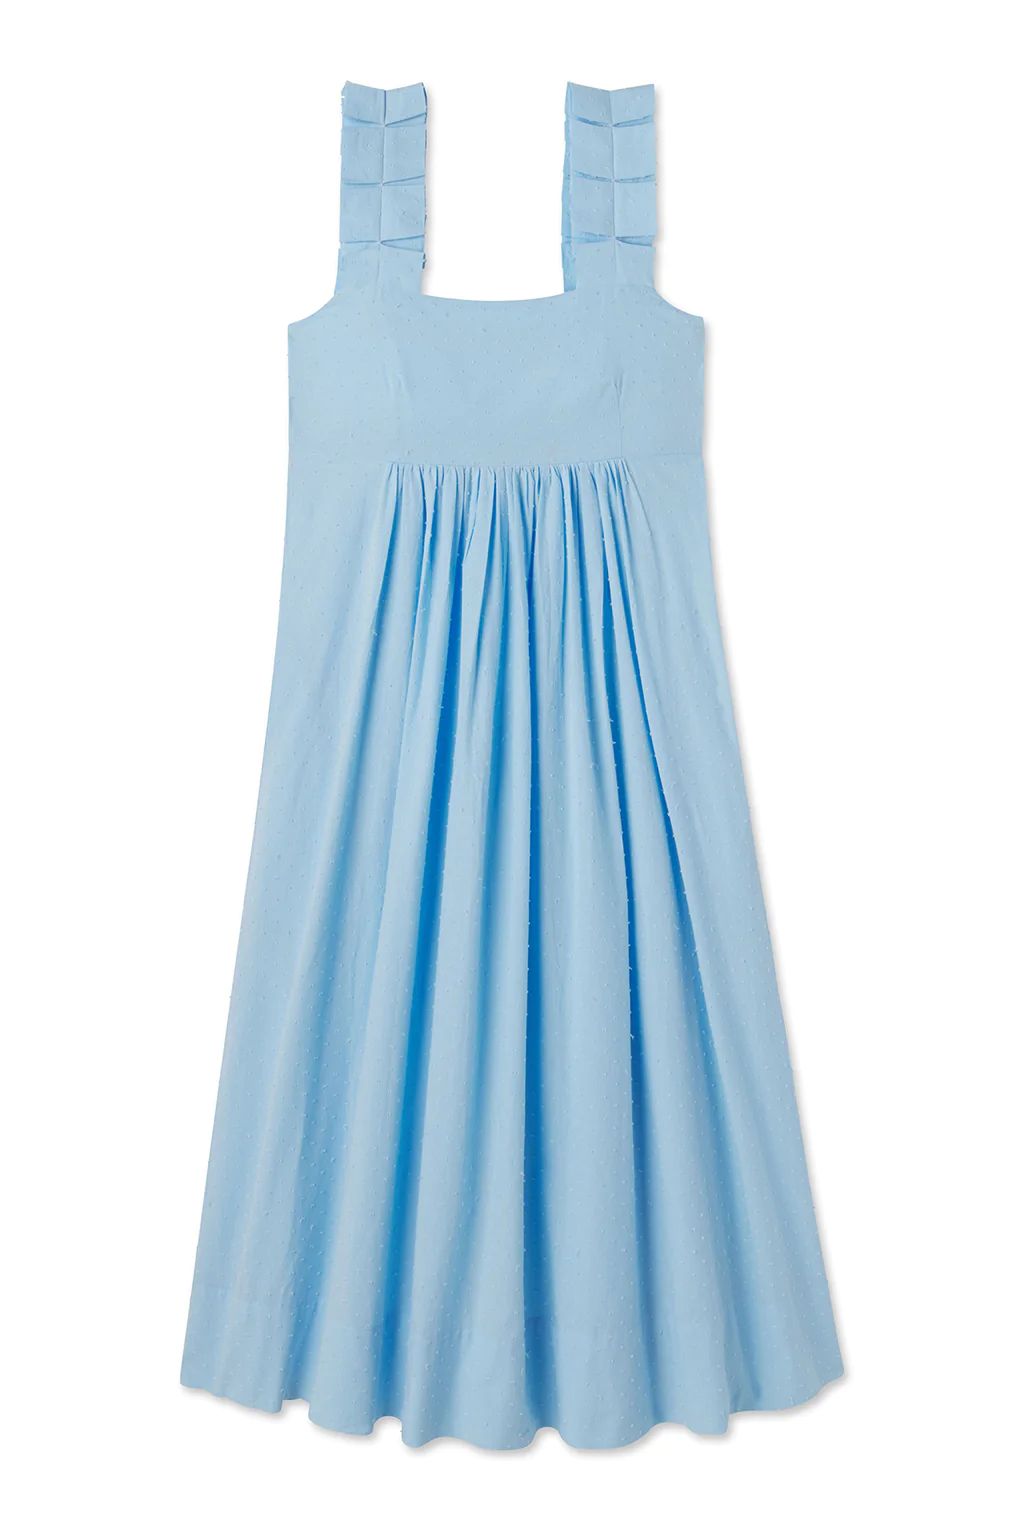 Lolly Dress in Morning Blue | Lake Pajamas